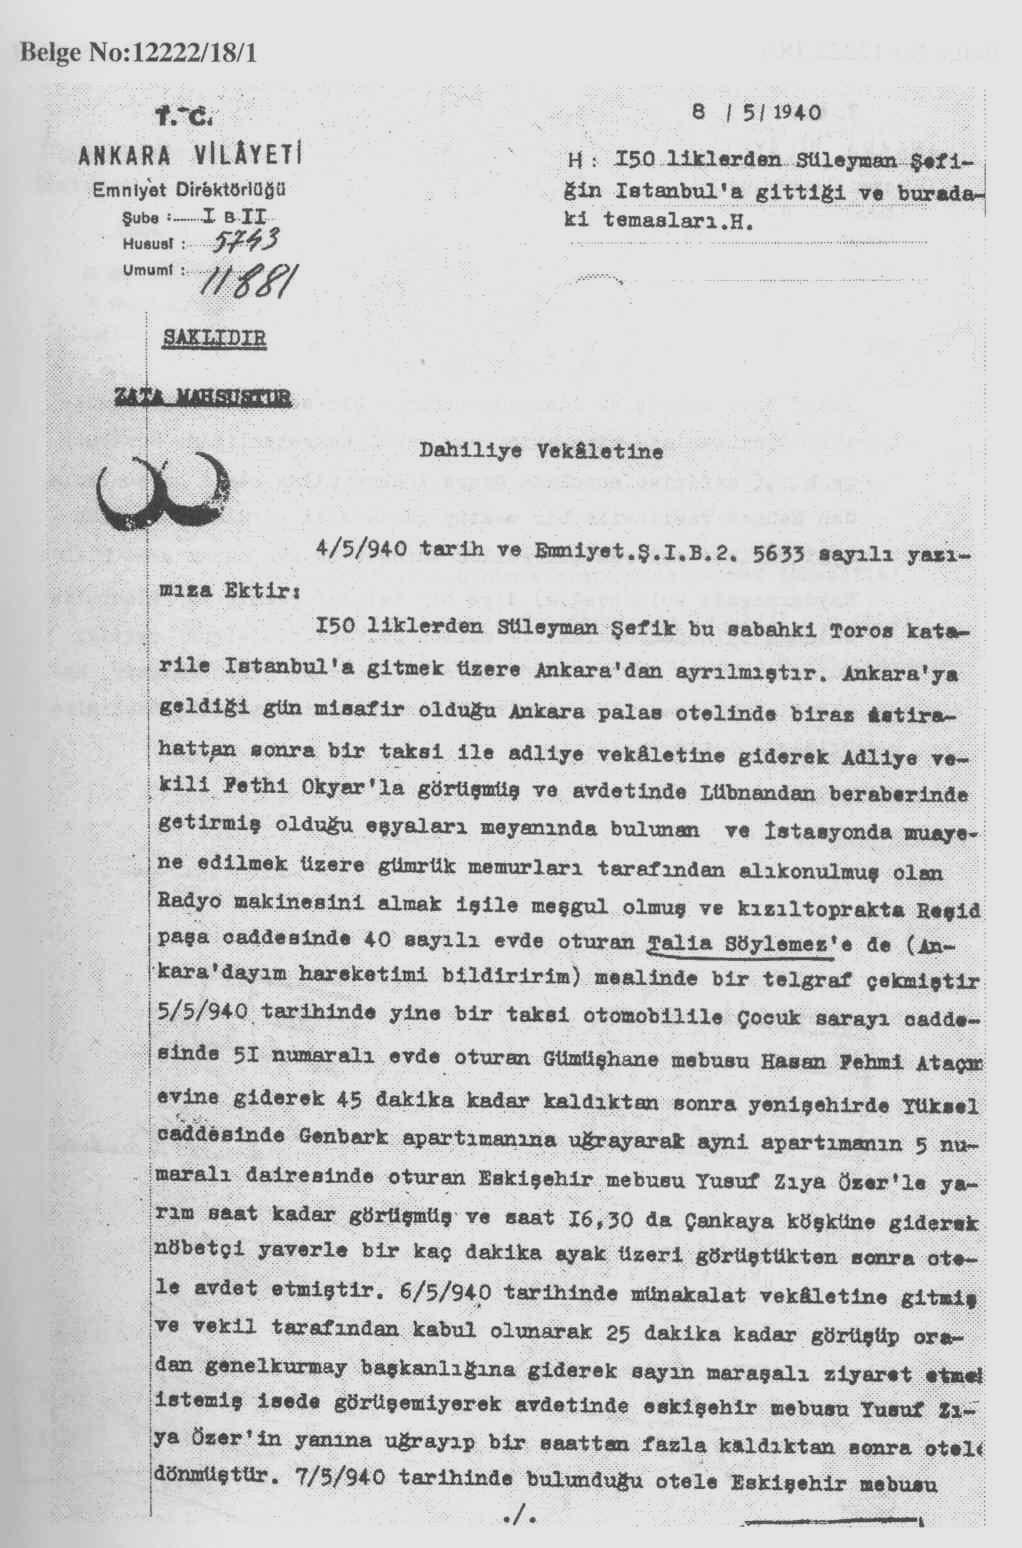 EK- 34-a 150 liklerden Süleyman Şefik in Polis Tarafından Sürekli Takip Edildiğine Dair Rapor Kaynak: Cumhuriyetin 75.